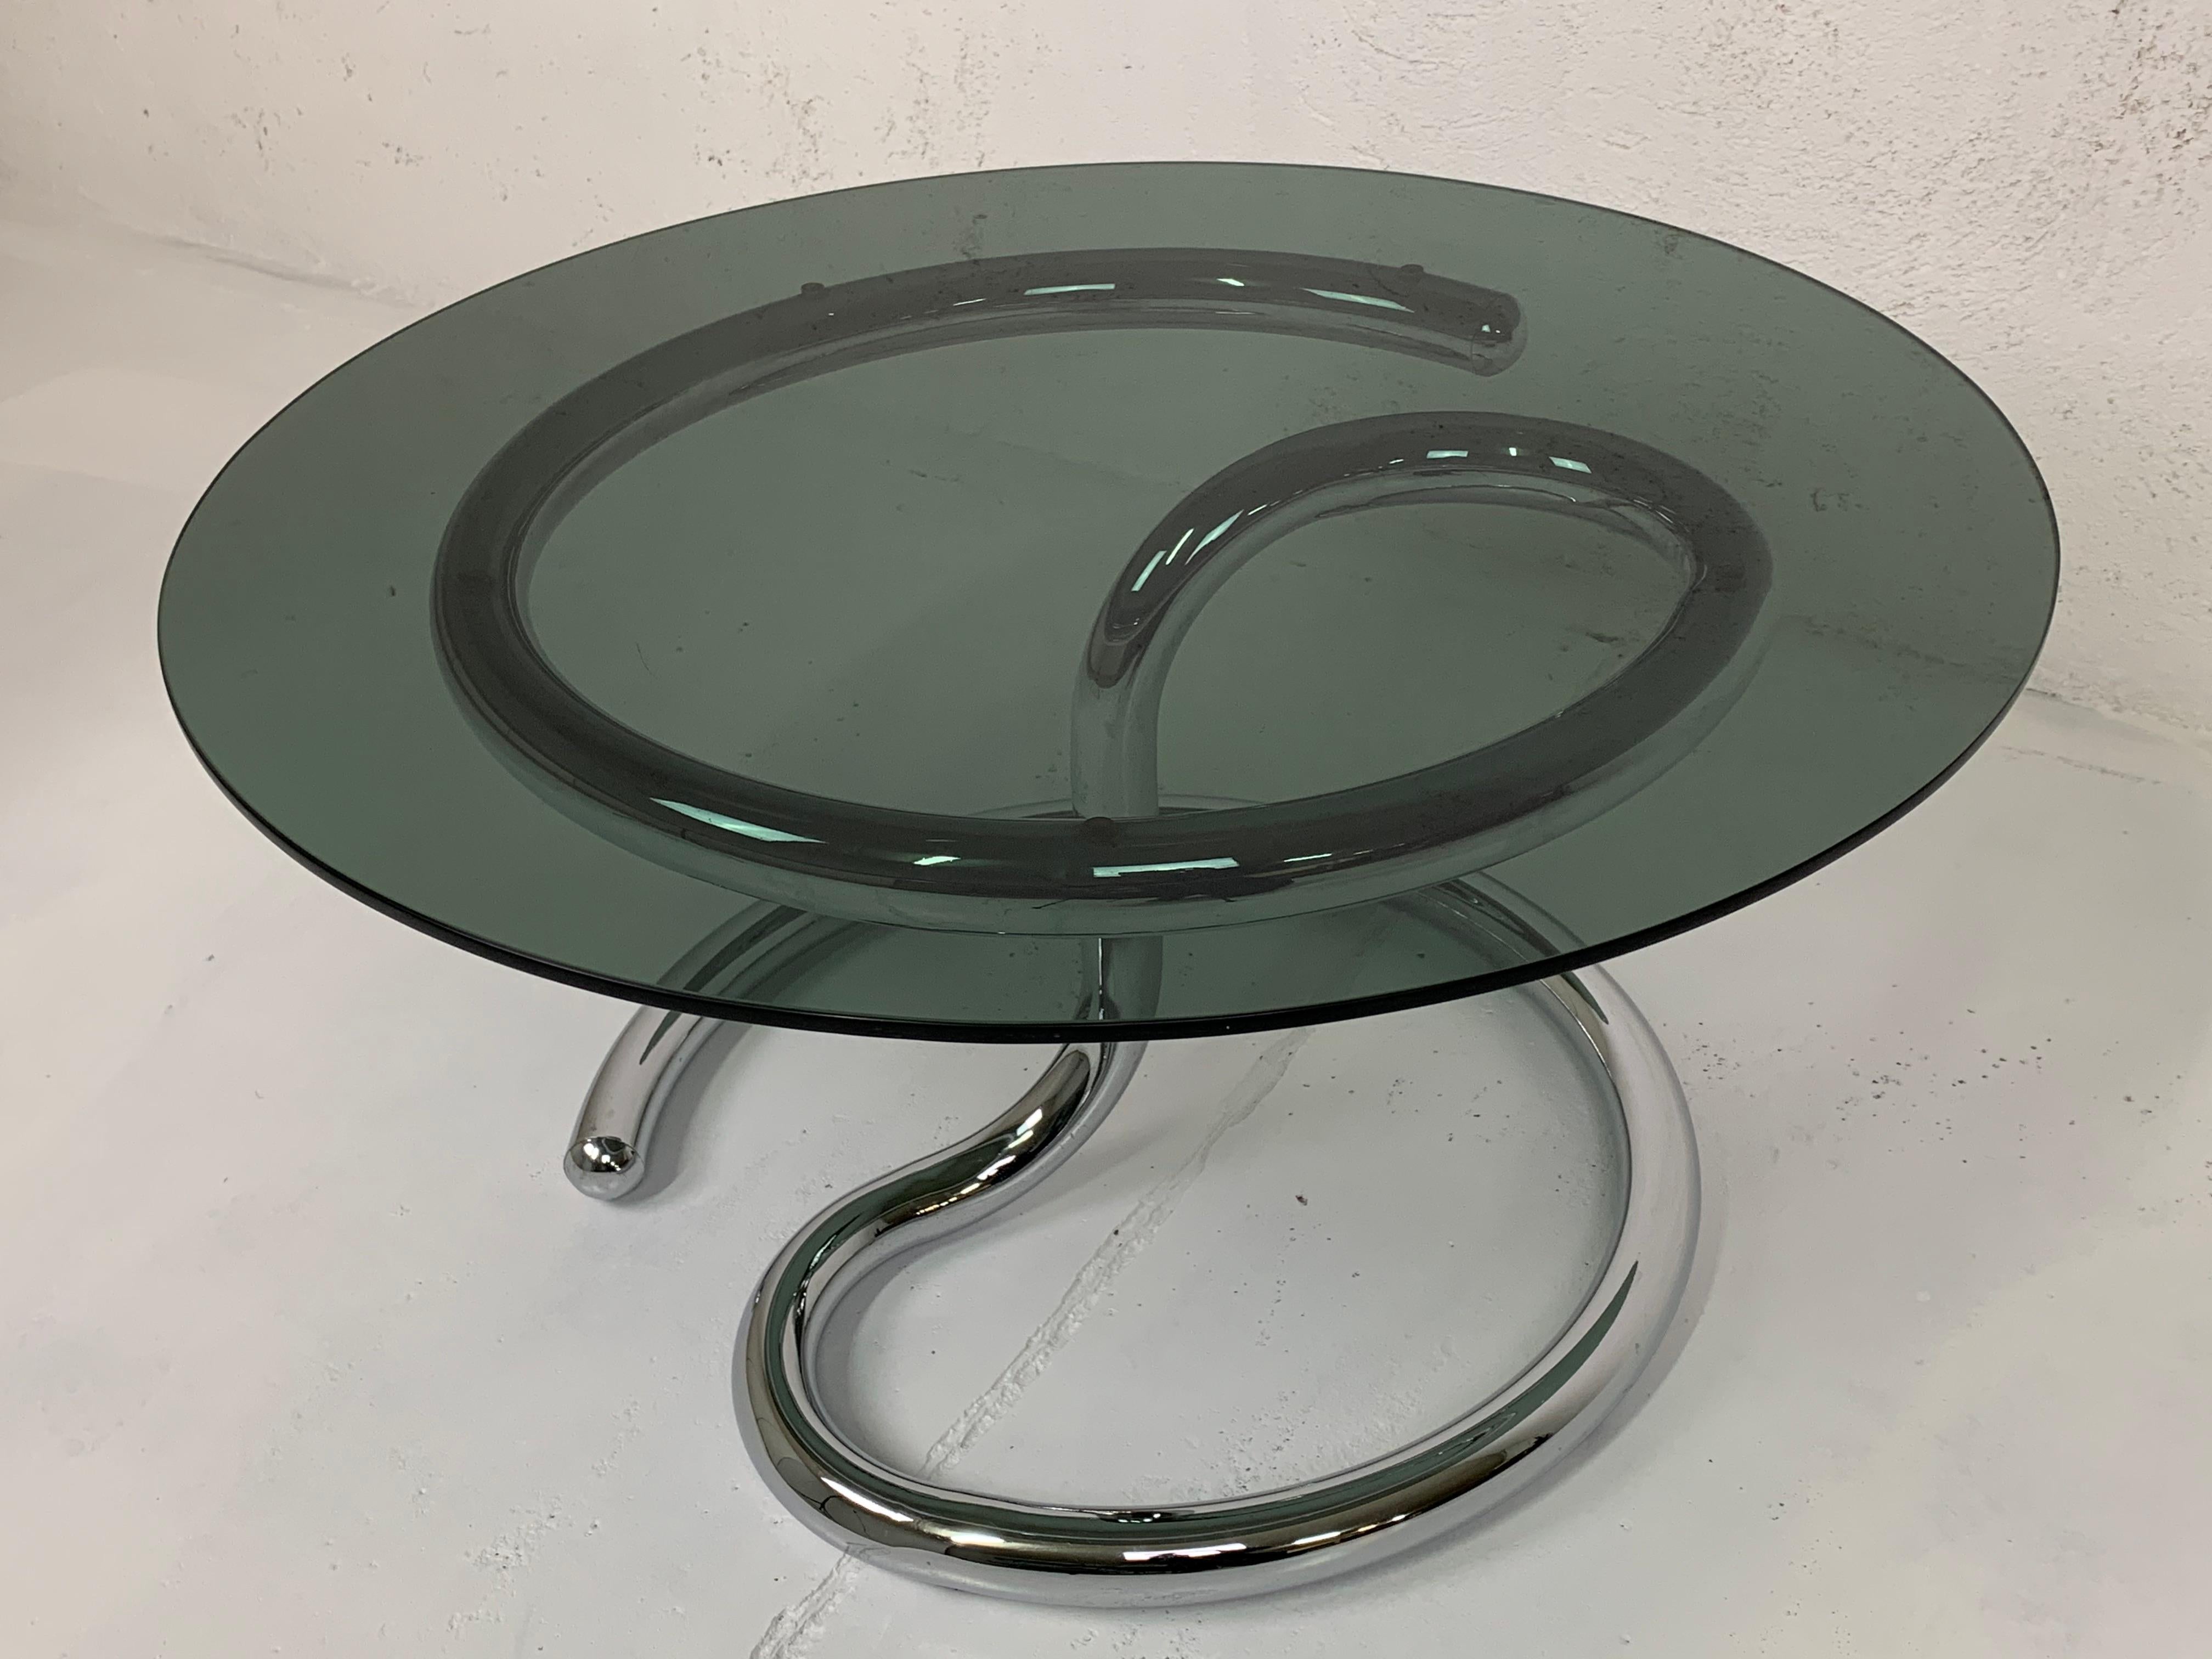 Tavolino da salotto Anaconda space age Paul Tuttle Strässle acciaio anni 60’ In Excellent Condition In Arezzo, IT